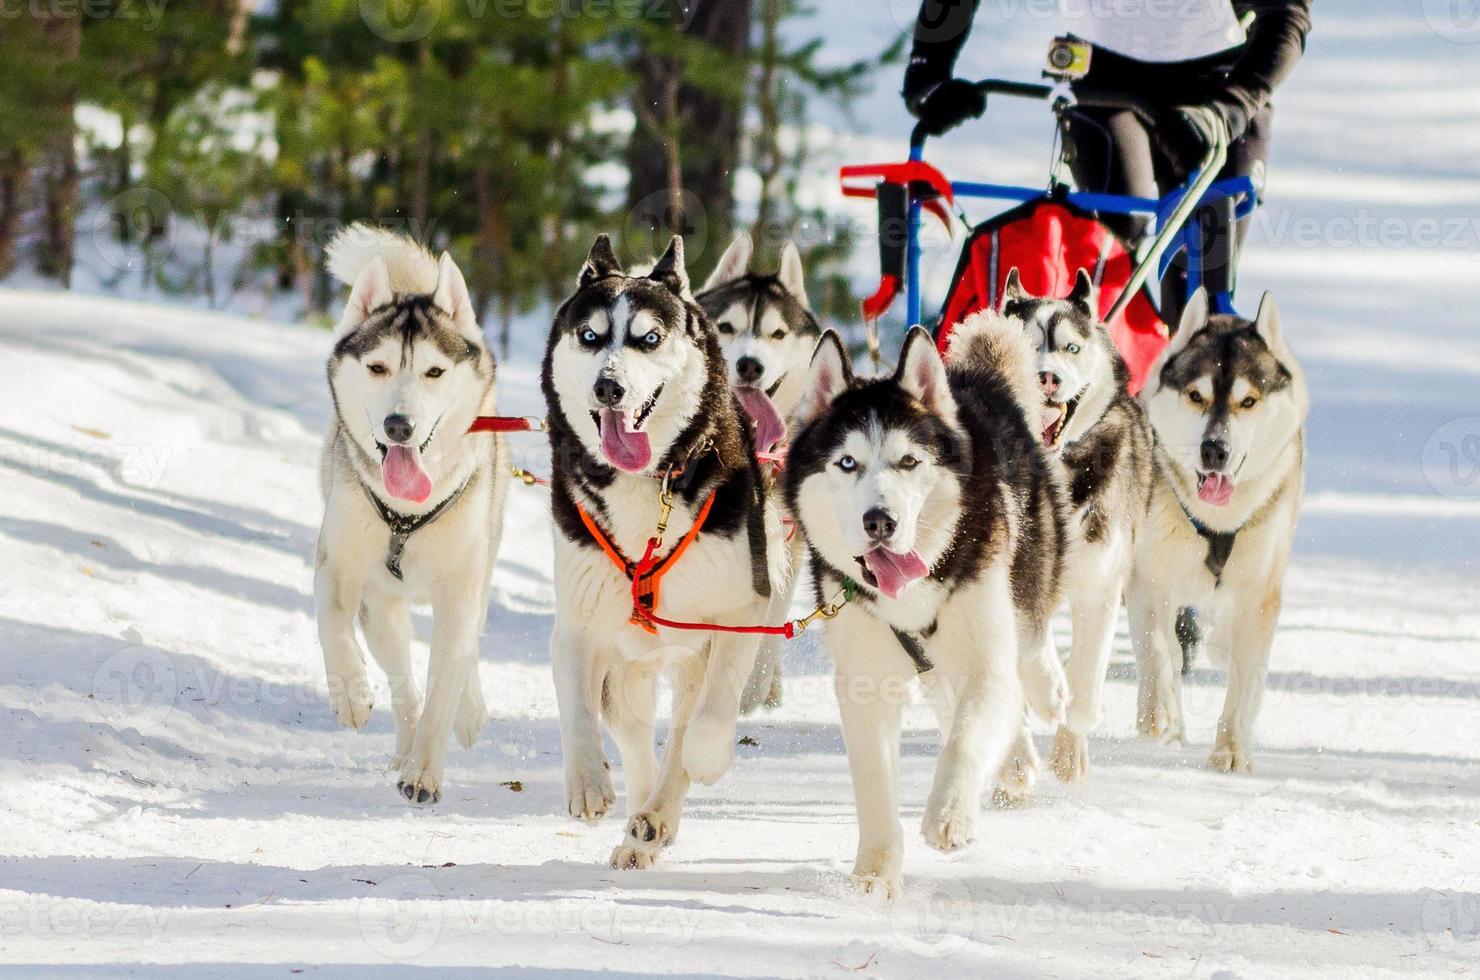 competição de corrida de cães de trenó. cães husky siberiano no arnês. desafio do campeonato de trenó na floresta da rússia de inverno frio. foto